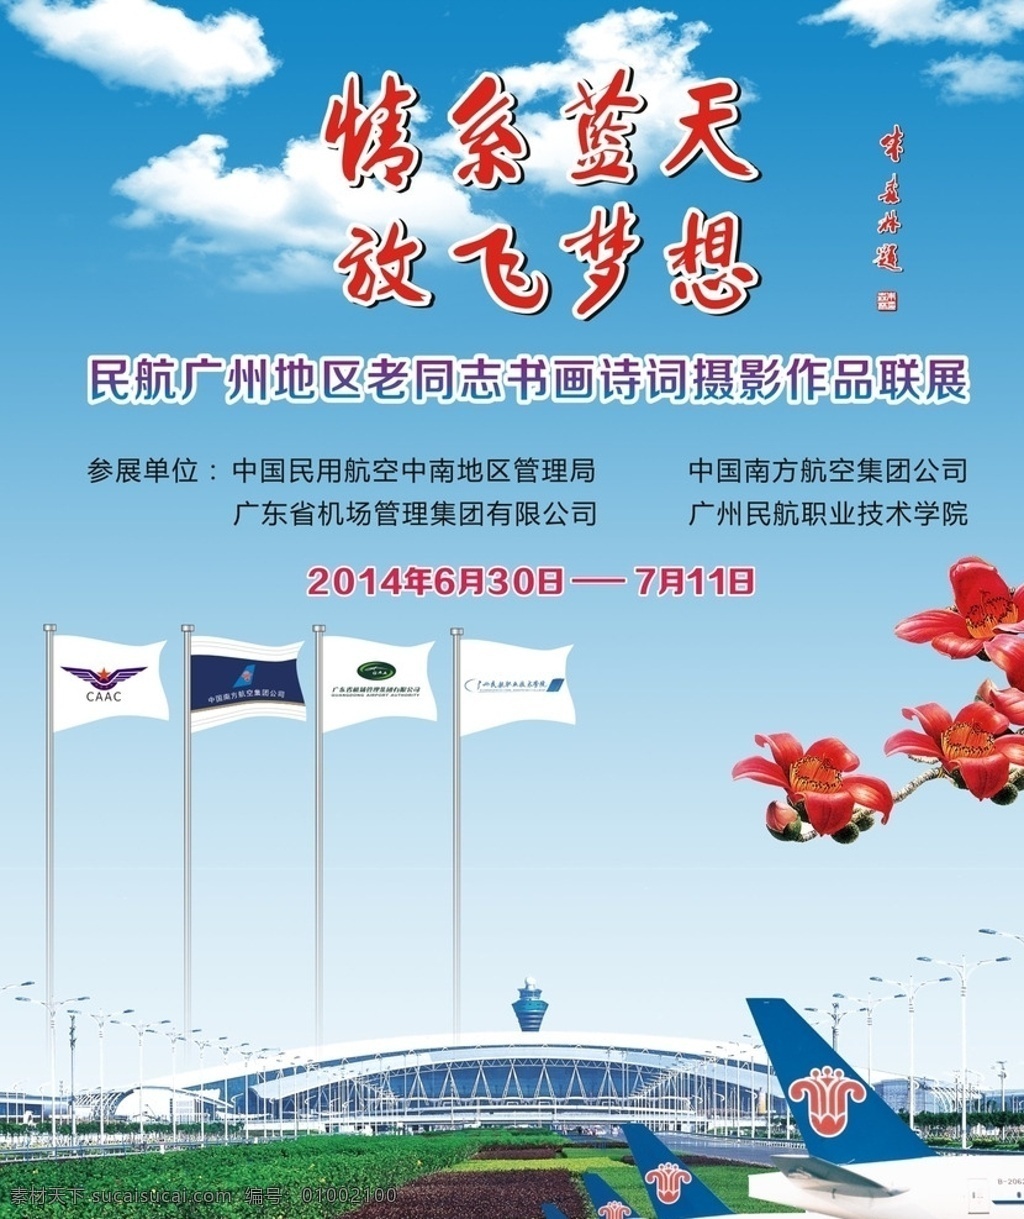 机场海报 白云机场 广州机场宣传 机场背景 机场活动 蓝天 白云 红棉花